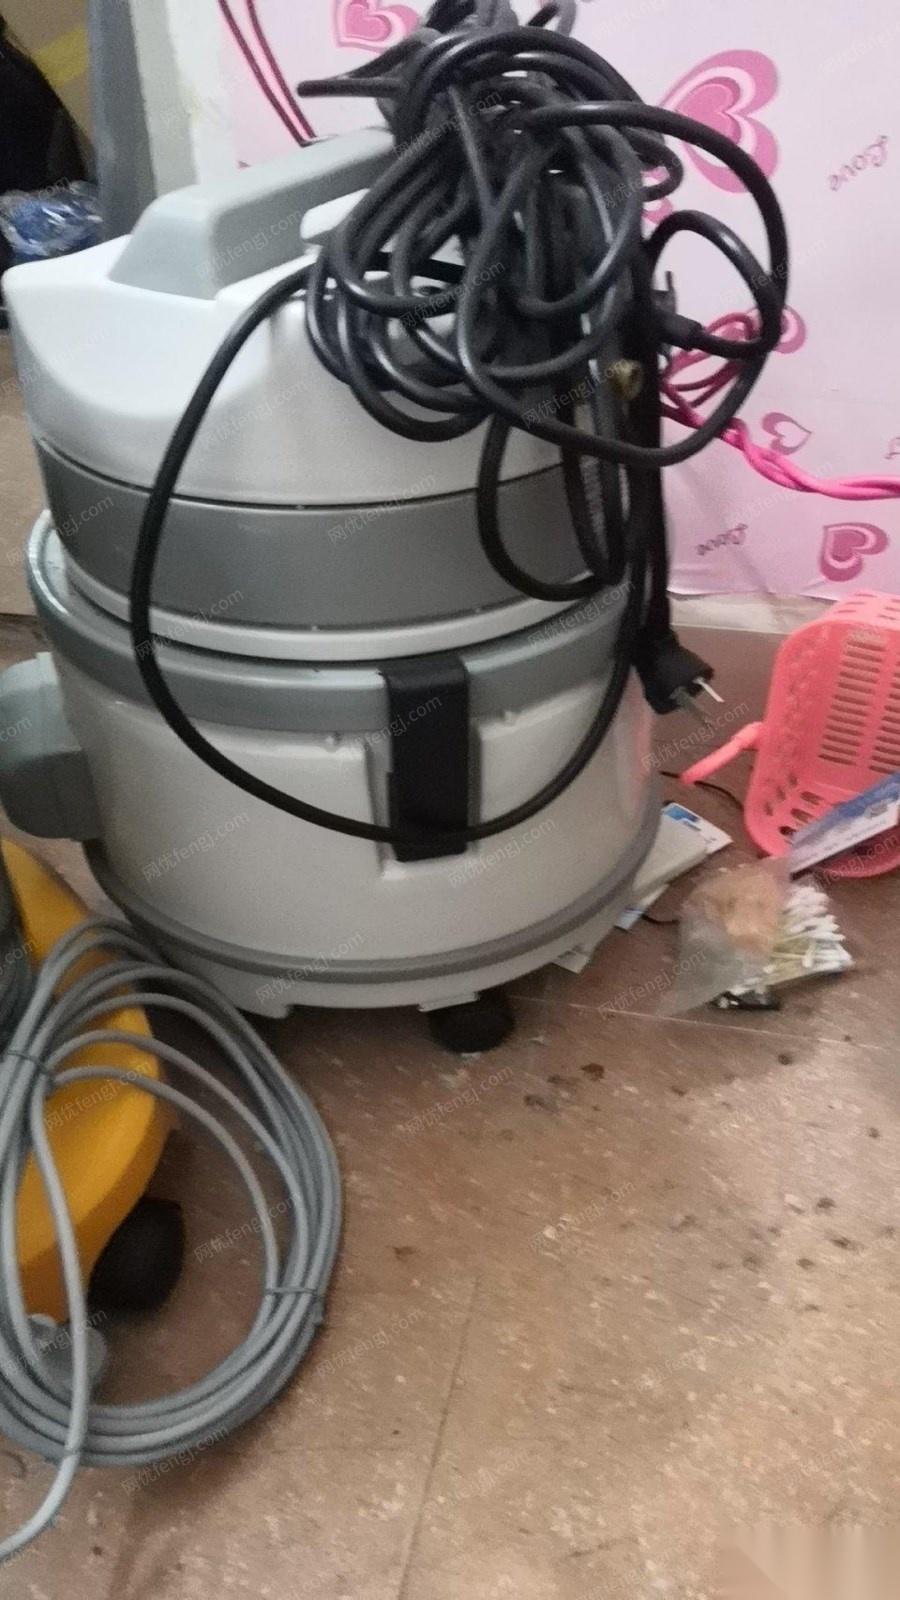 广东广州不做了急售洁邦家电清洗工具，空气检测机等保洁机器 出售价15000元  最近二天在家.